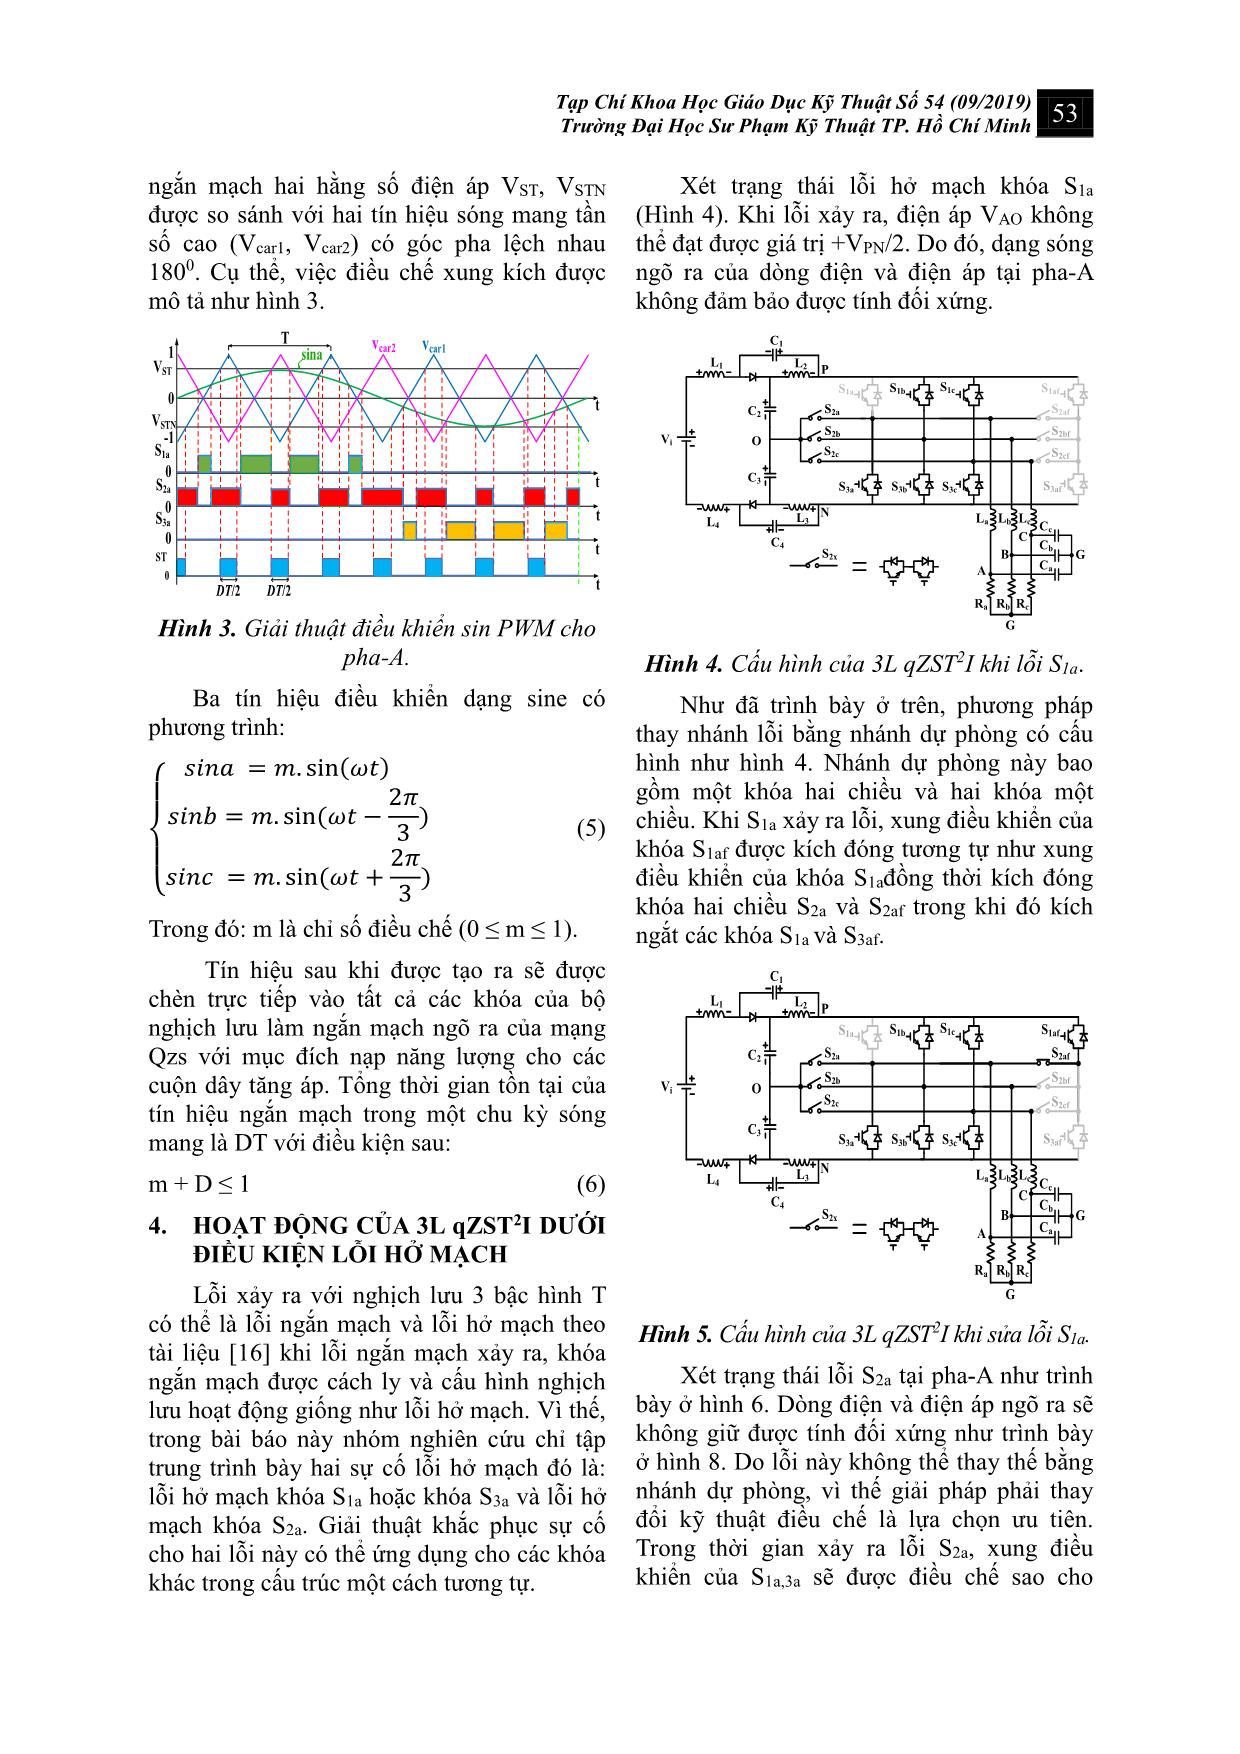 Nghịch lưu 3 bậc hình T với khả năng chịu lỗi trang 4